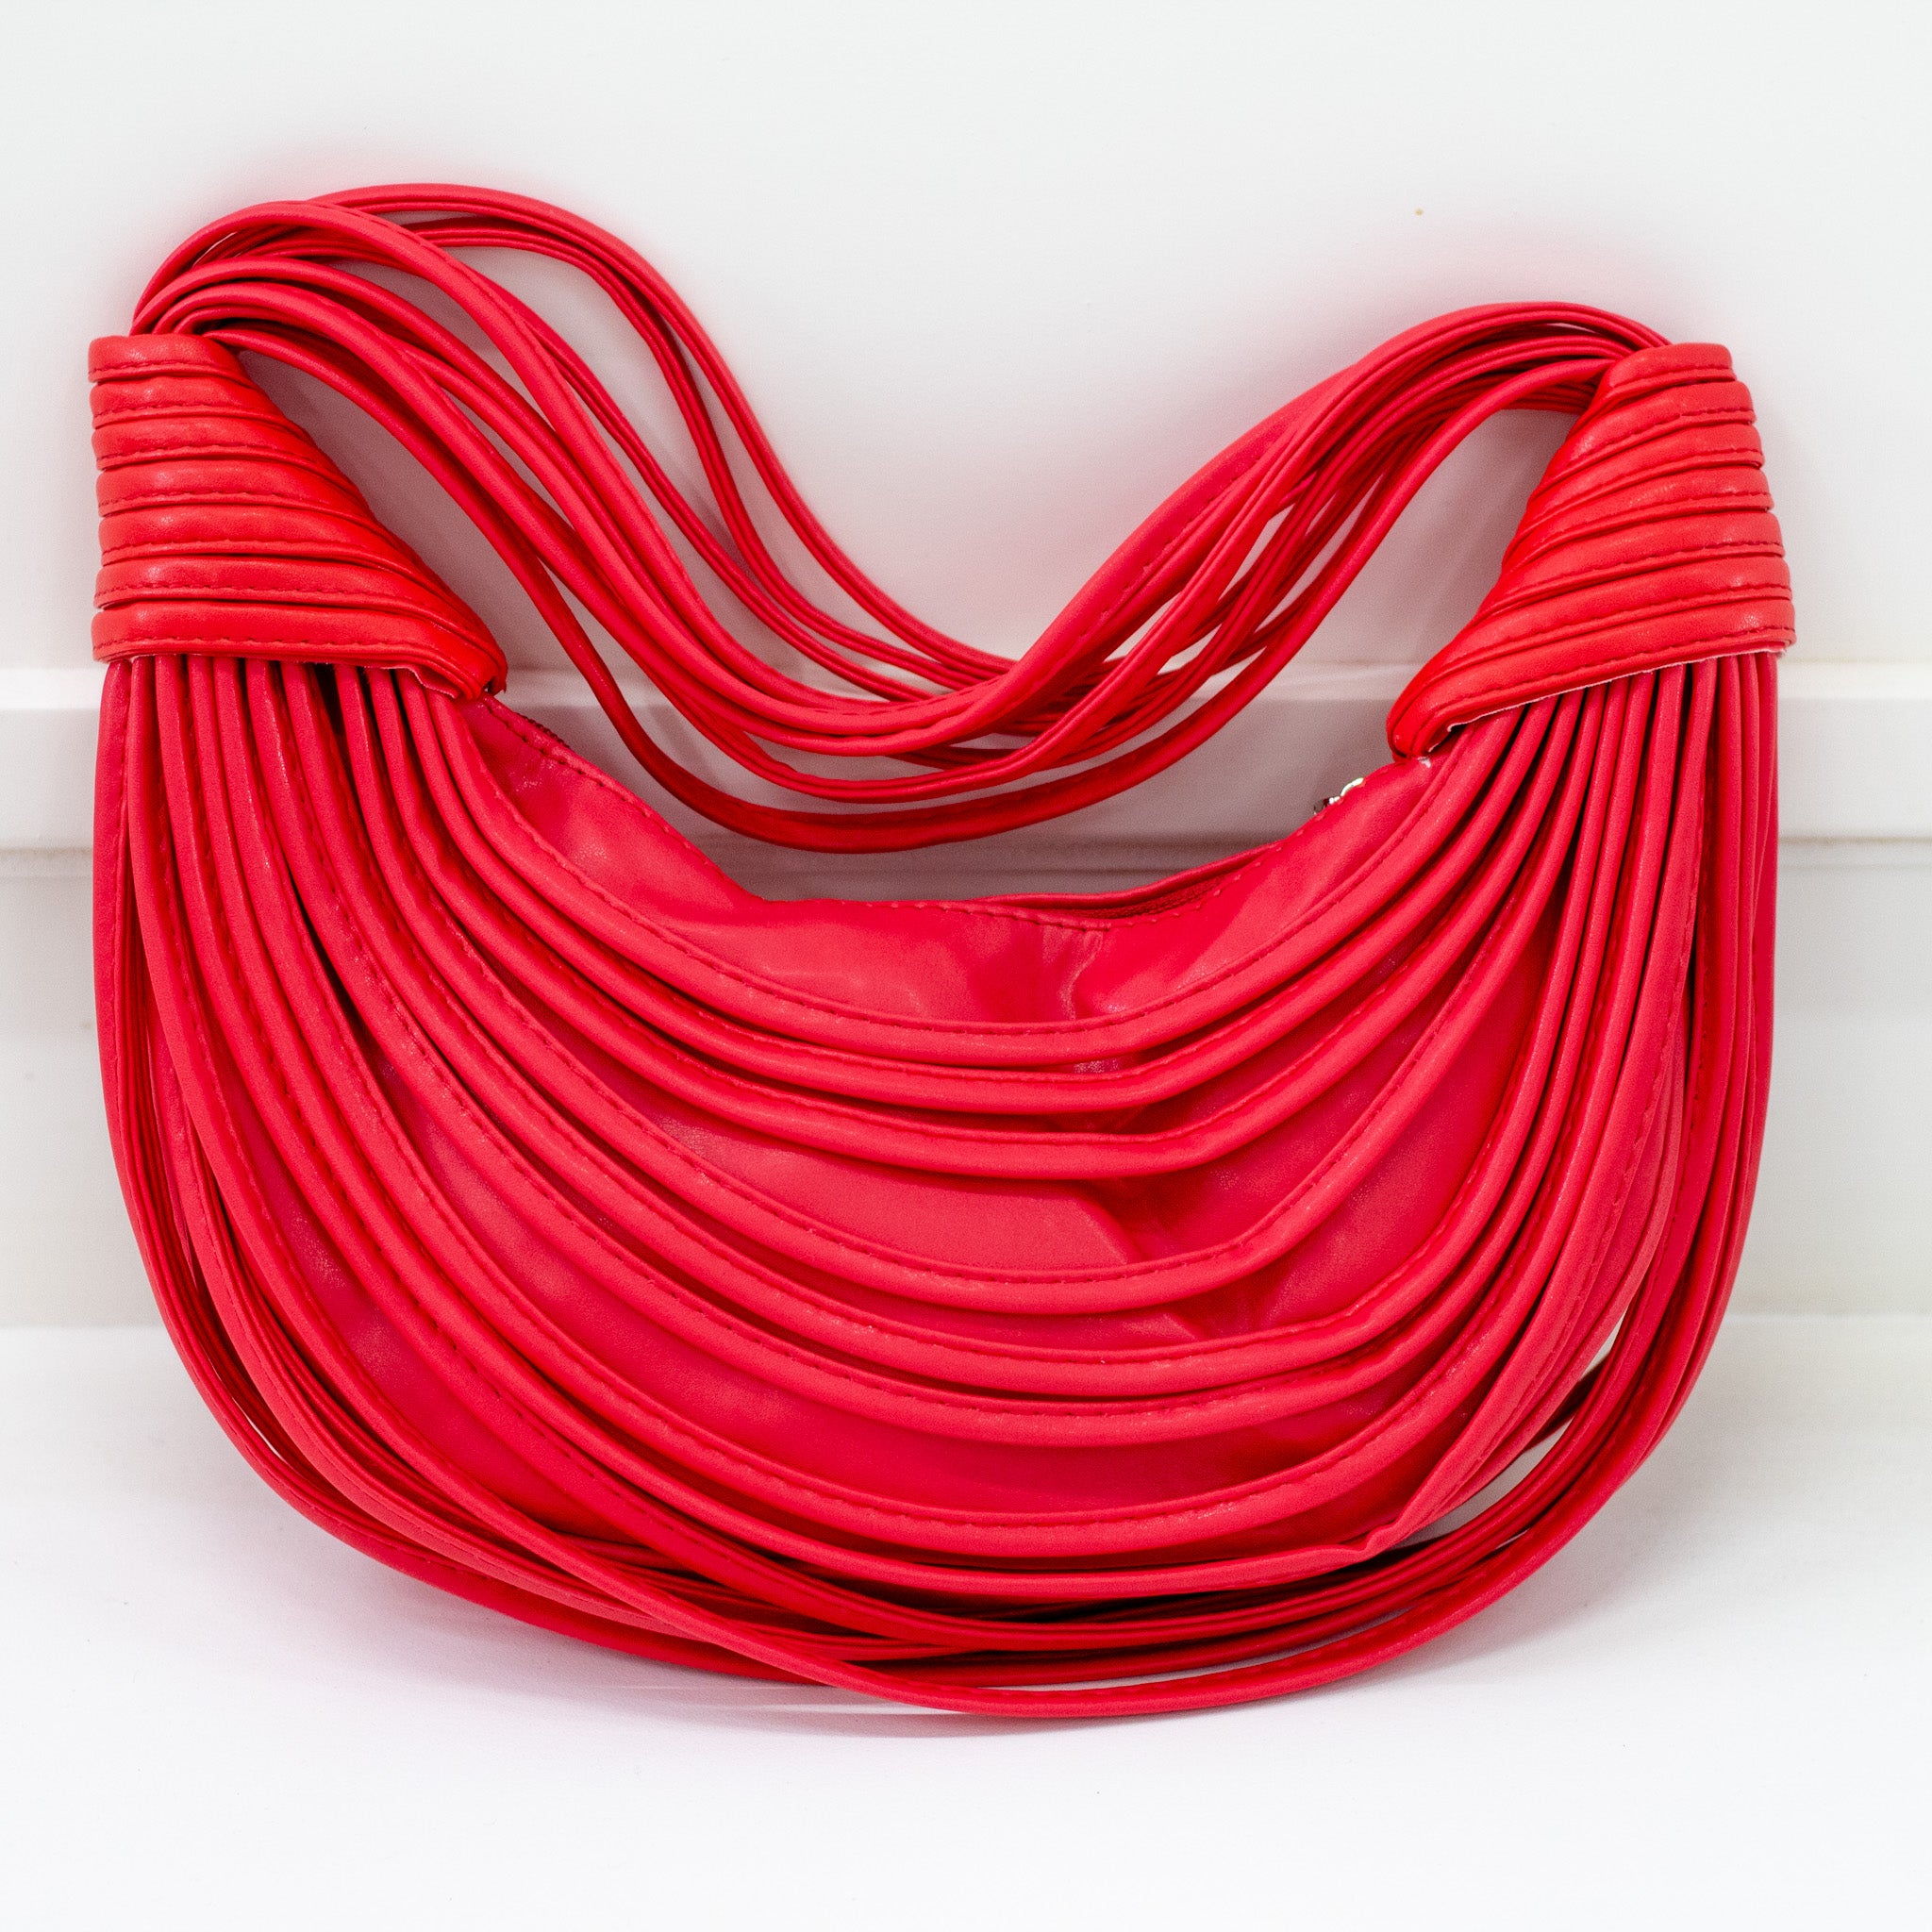 Red strippy belts rigid shoulder bag shibz